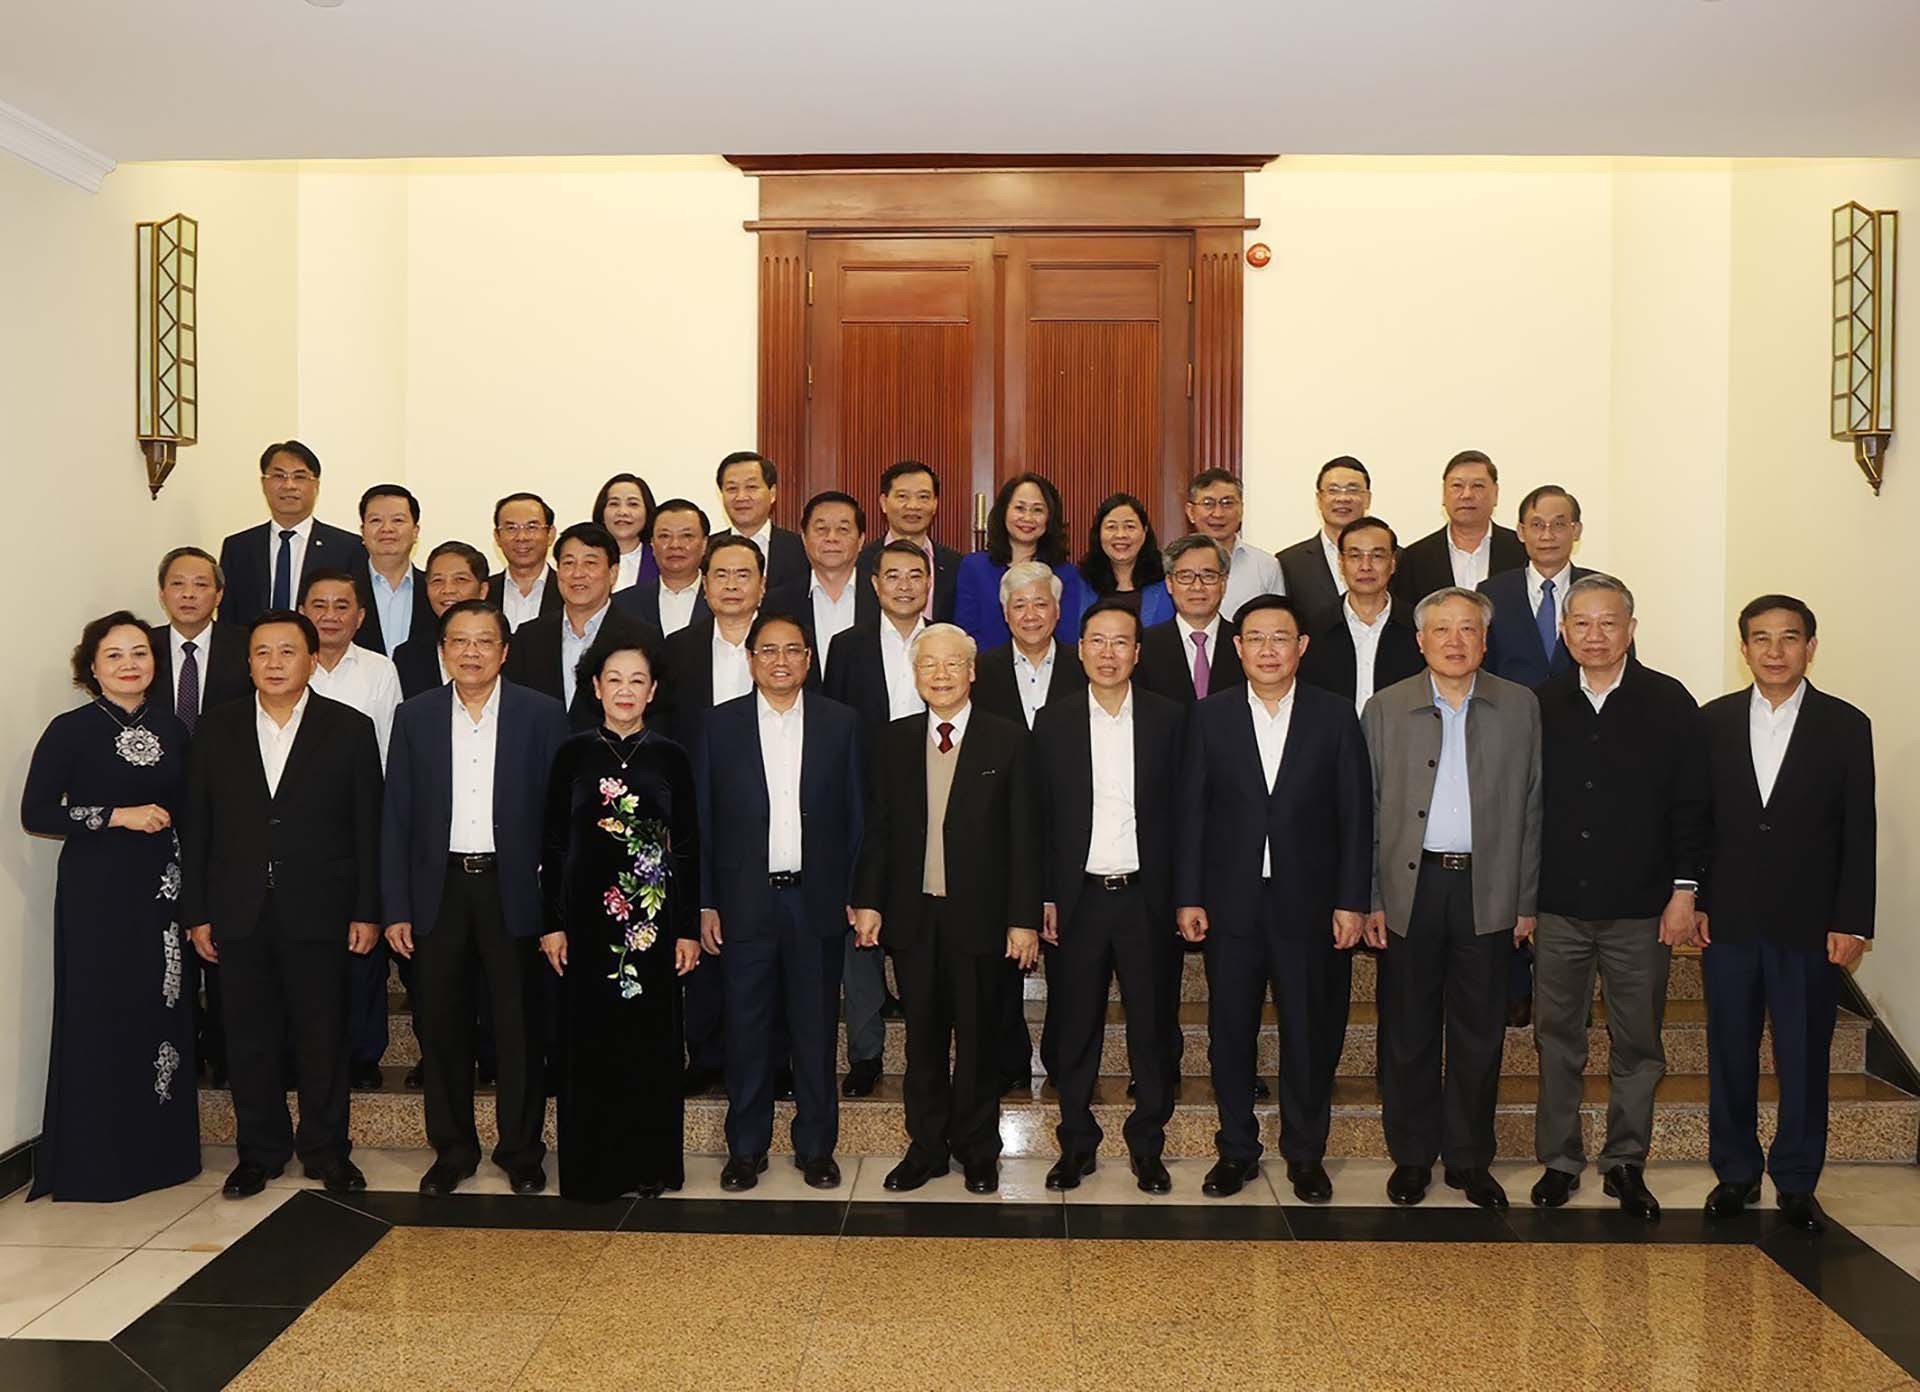 Tổng Bí thư Nguyễn Phú Trọng và các đồng chí lãnh đạo Đảng, Nhà nước cùng đại biểu chụp ảnh chung. (Nguồn: TTXVN)